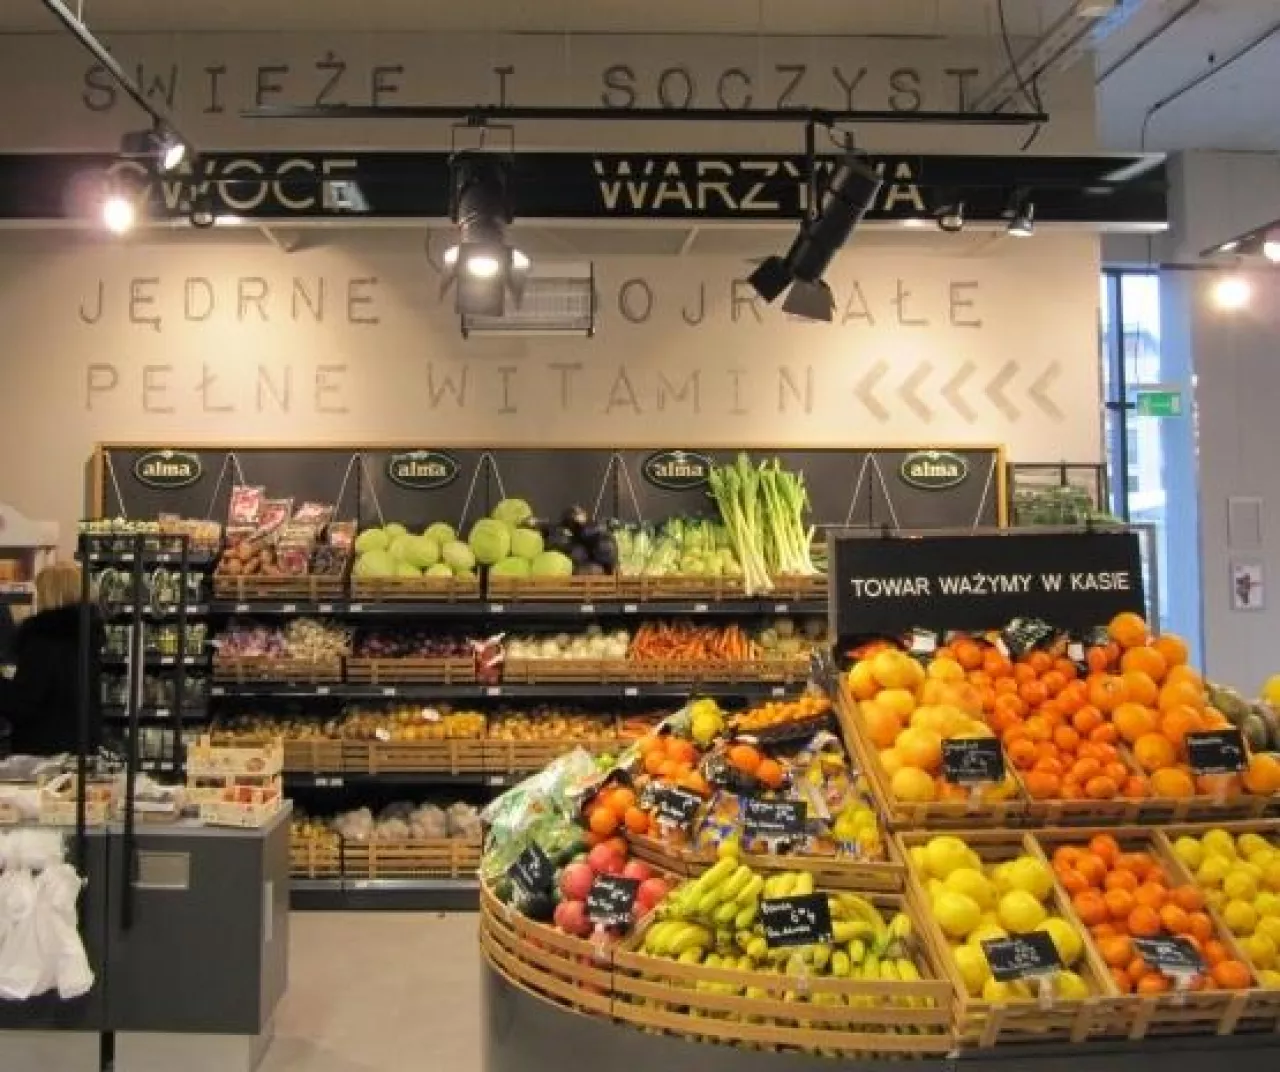 Październikowy wzrost cen żywności będzie wynikać ze zjawisk sezonowych - podaje MR (fot. wiadomoscihandlowe.pl)